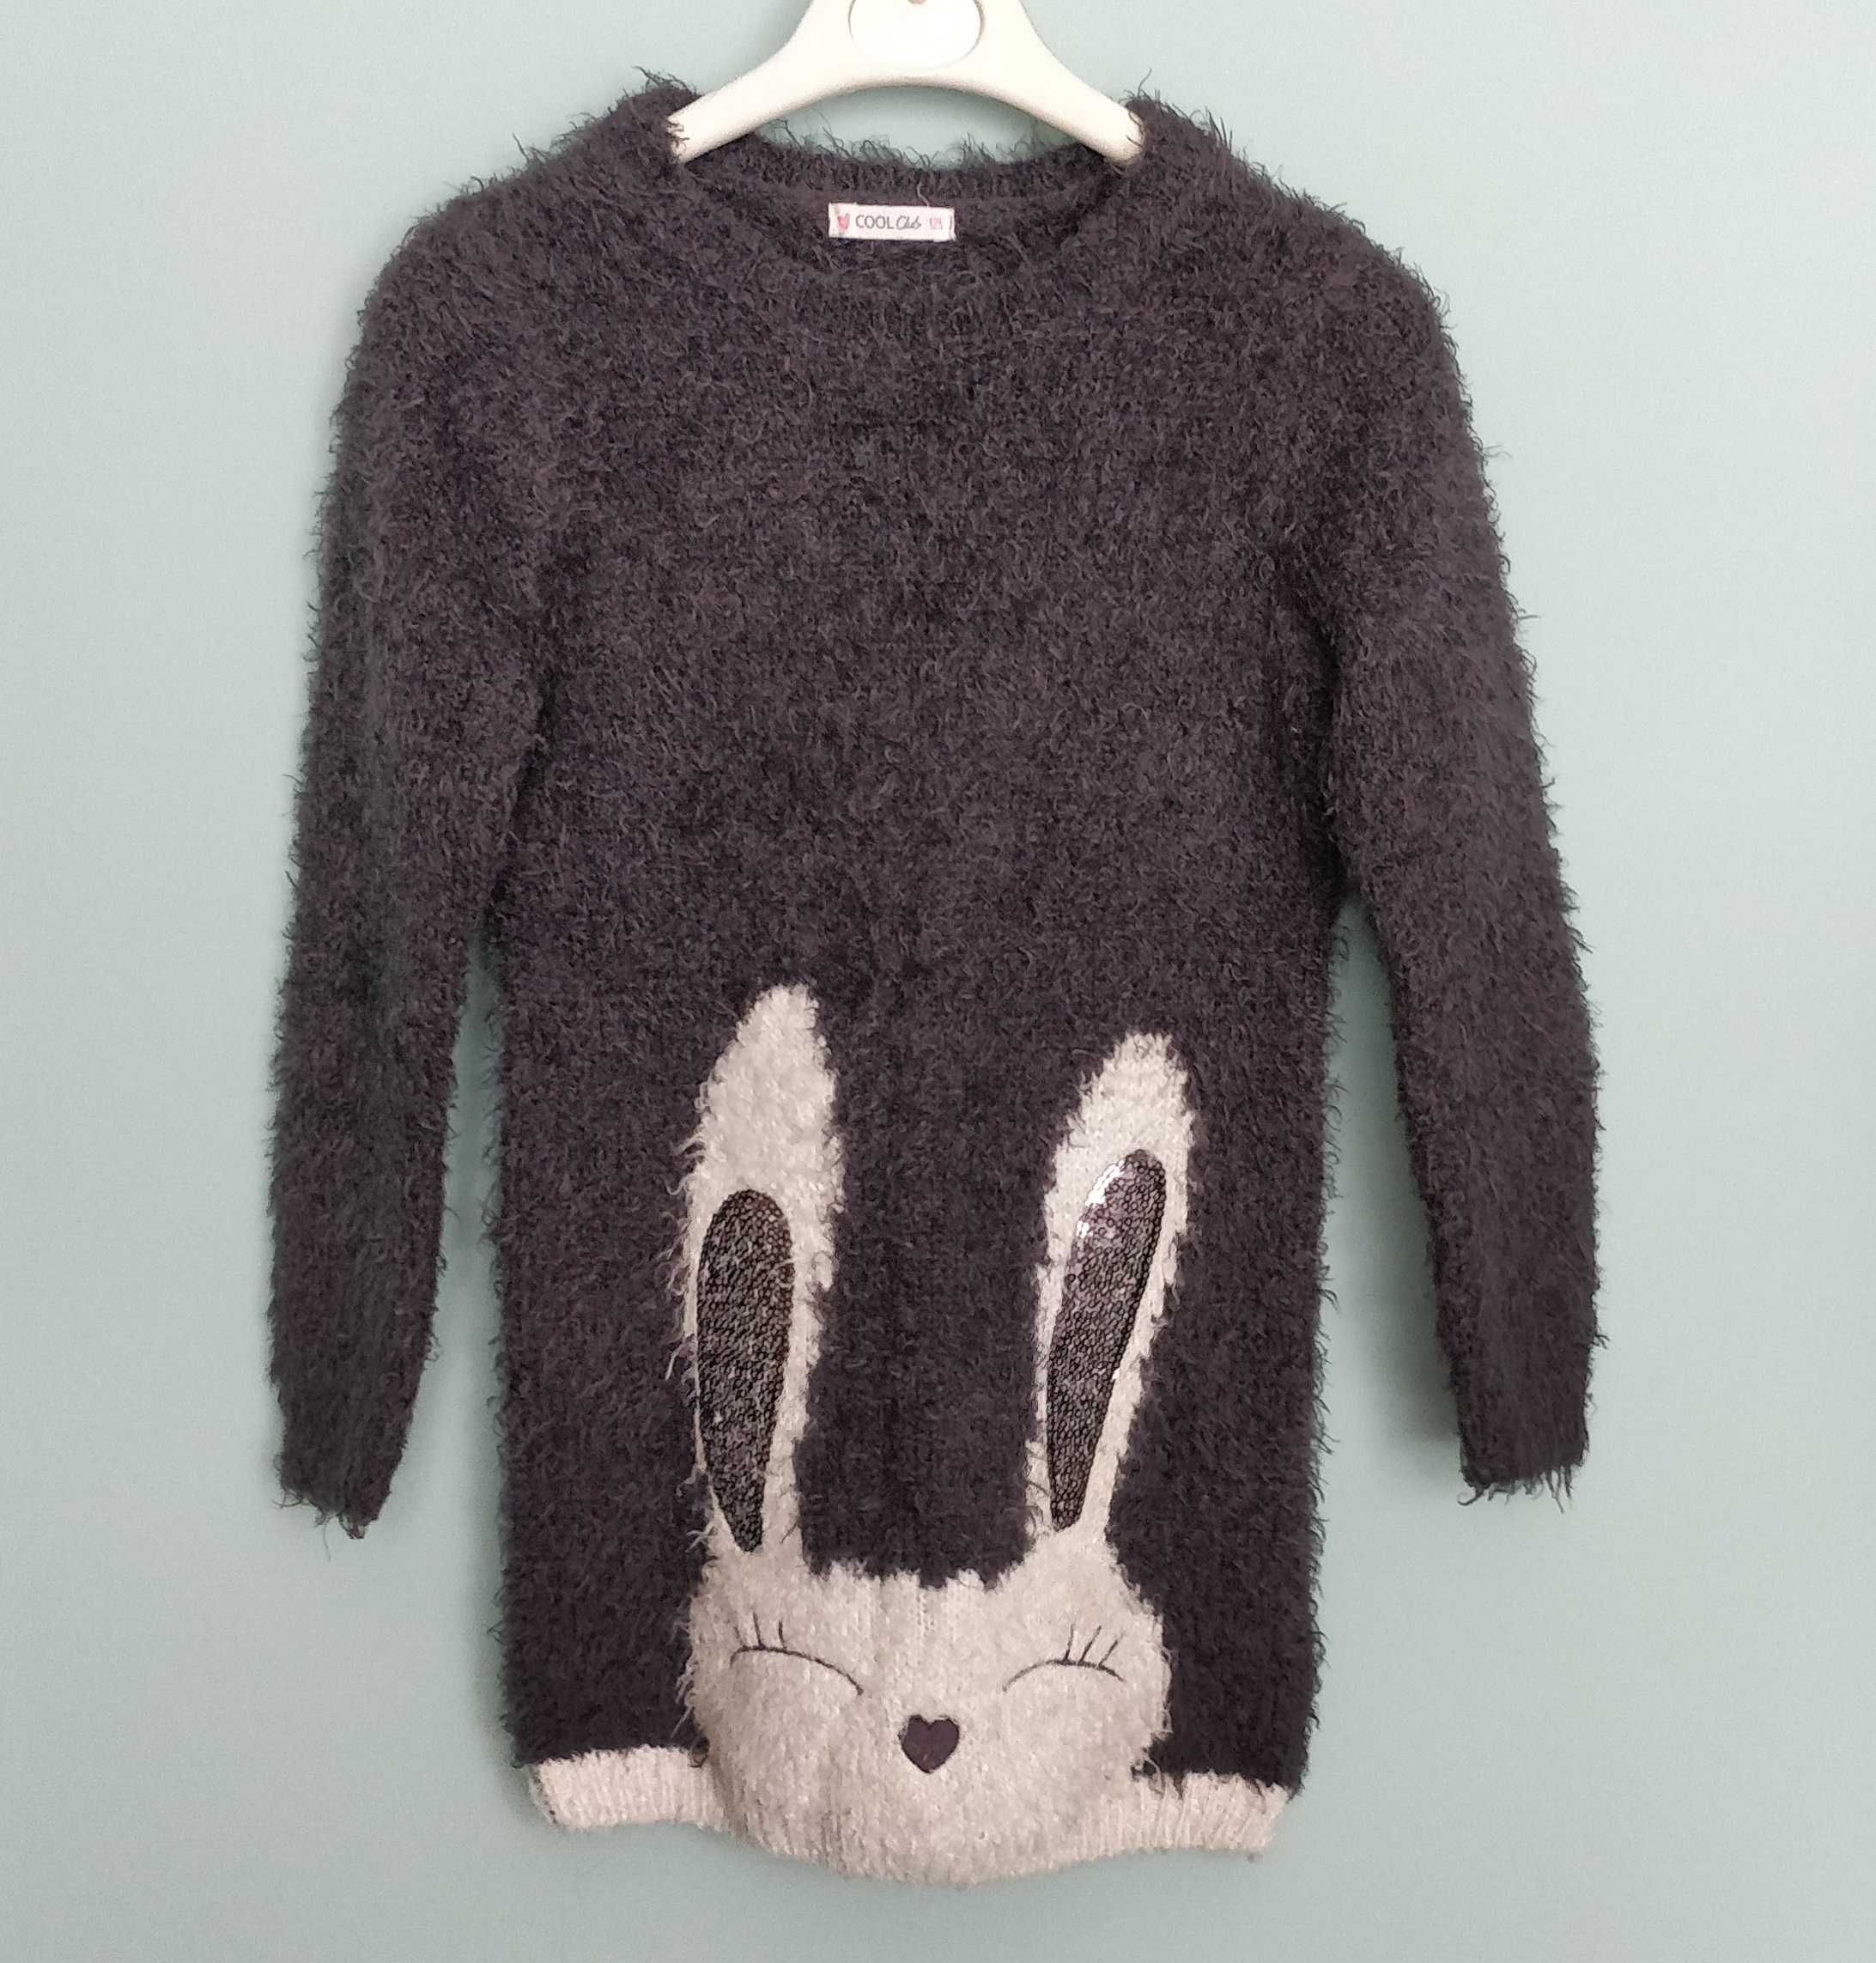 Sweter z króliczkiem Cool Club, Smyk, rozmiar 128 cm, dziewczęcy